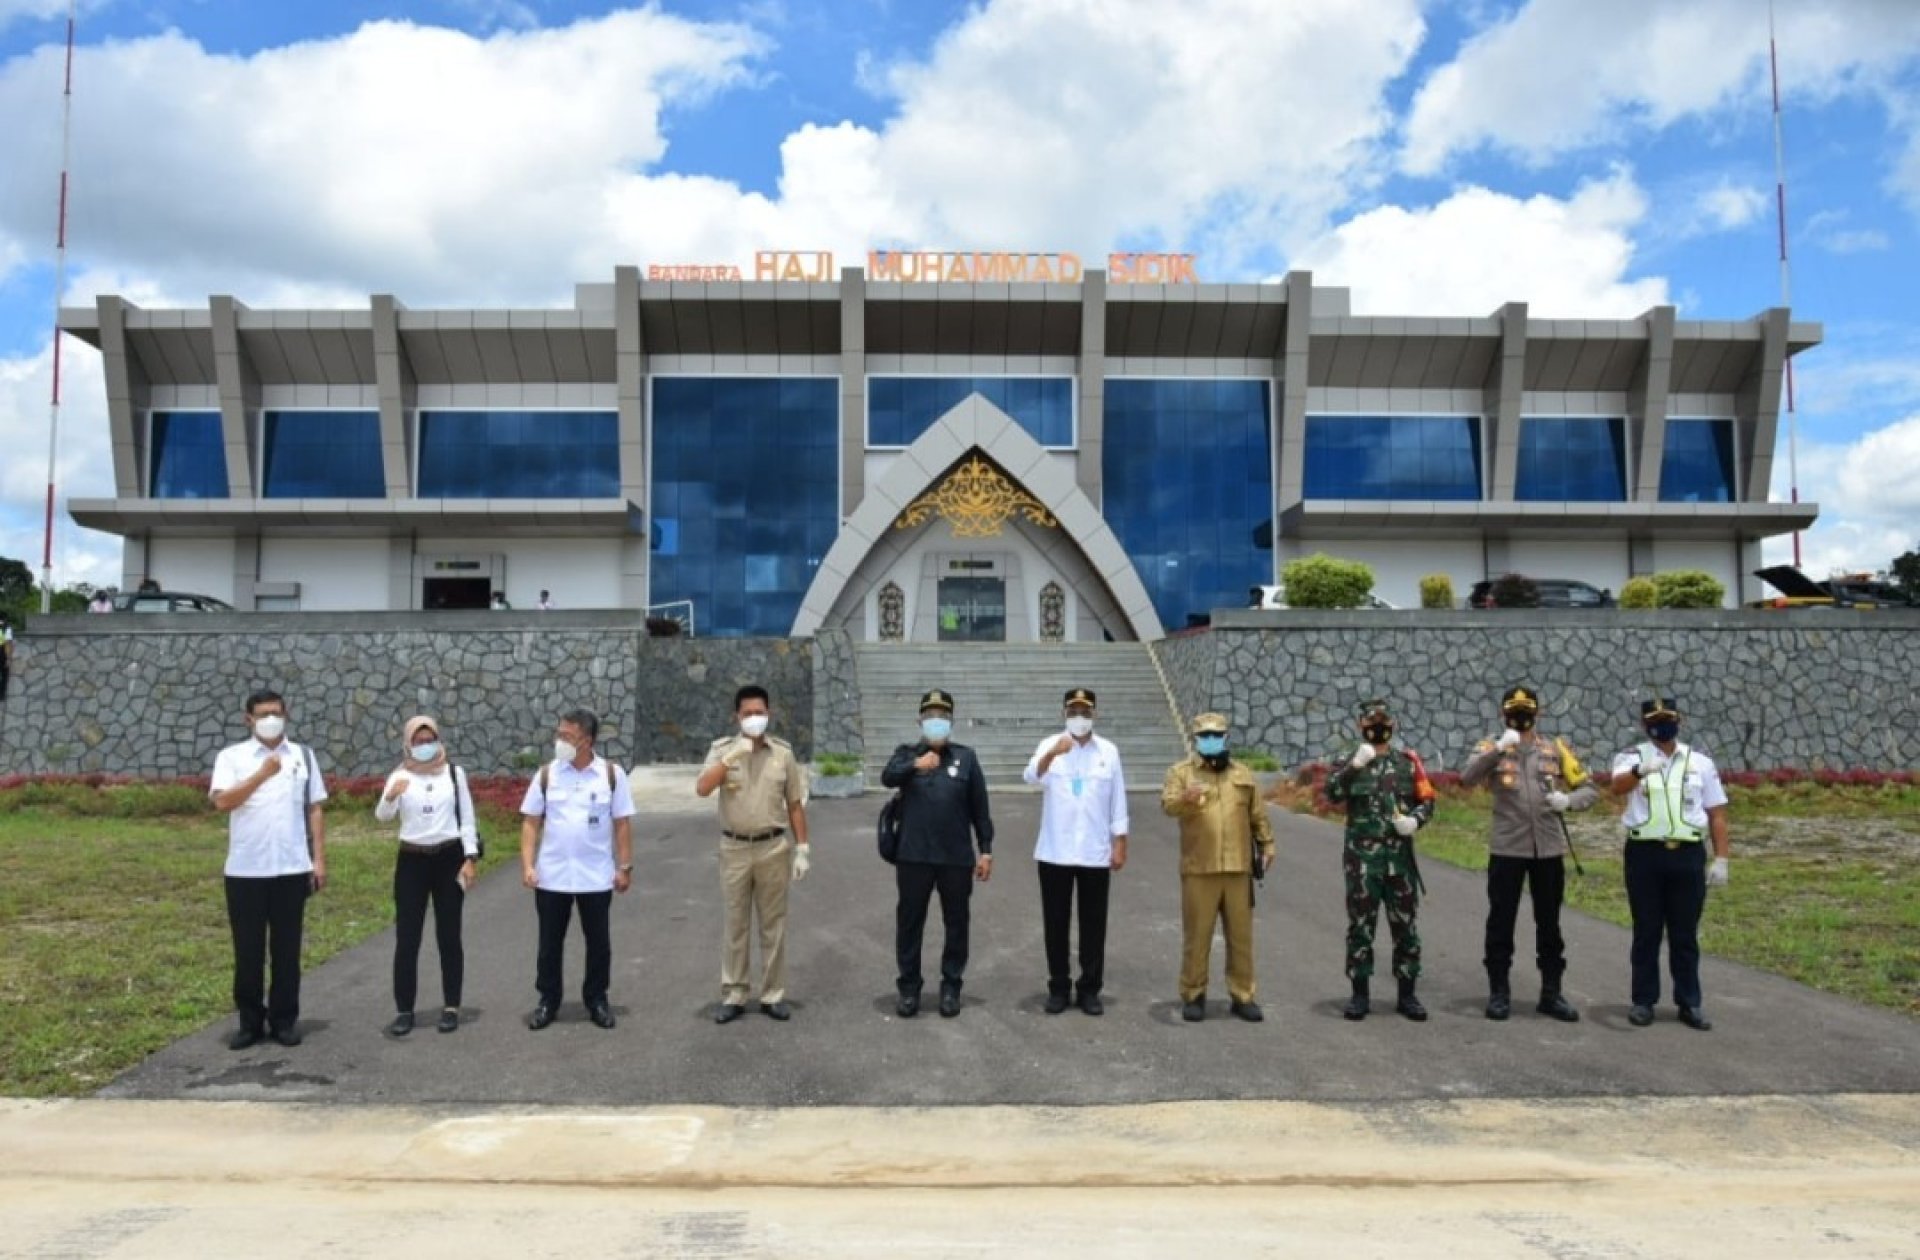 Plt. Gubernur Kalteng Dampingi Menteri Perhubungan Tinjau Bandara Baru di Barito Utara